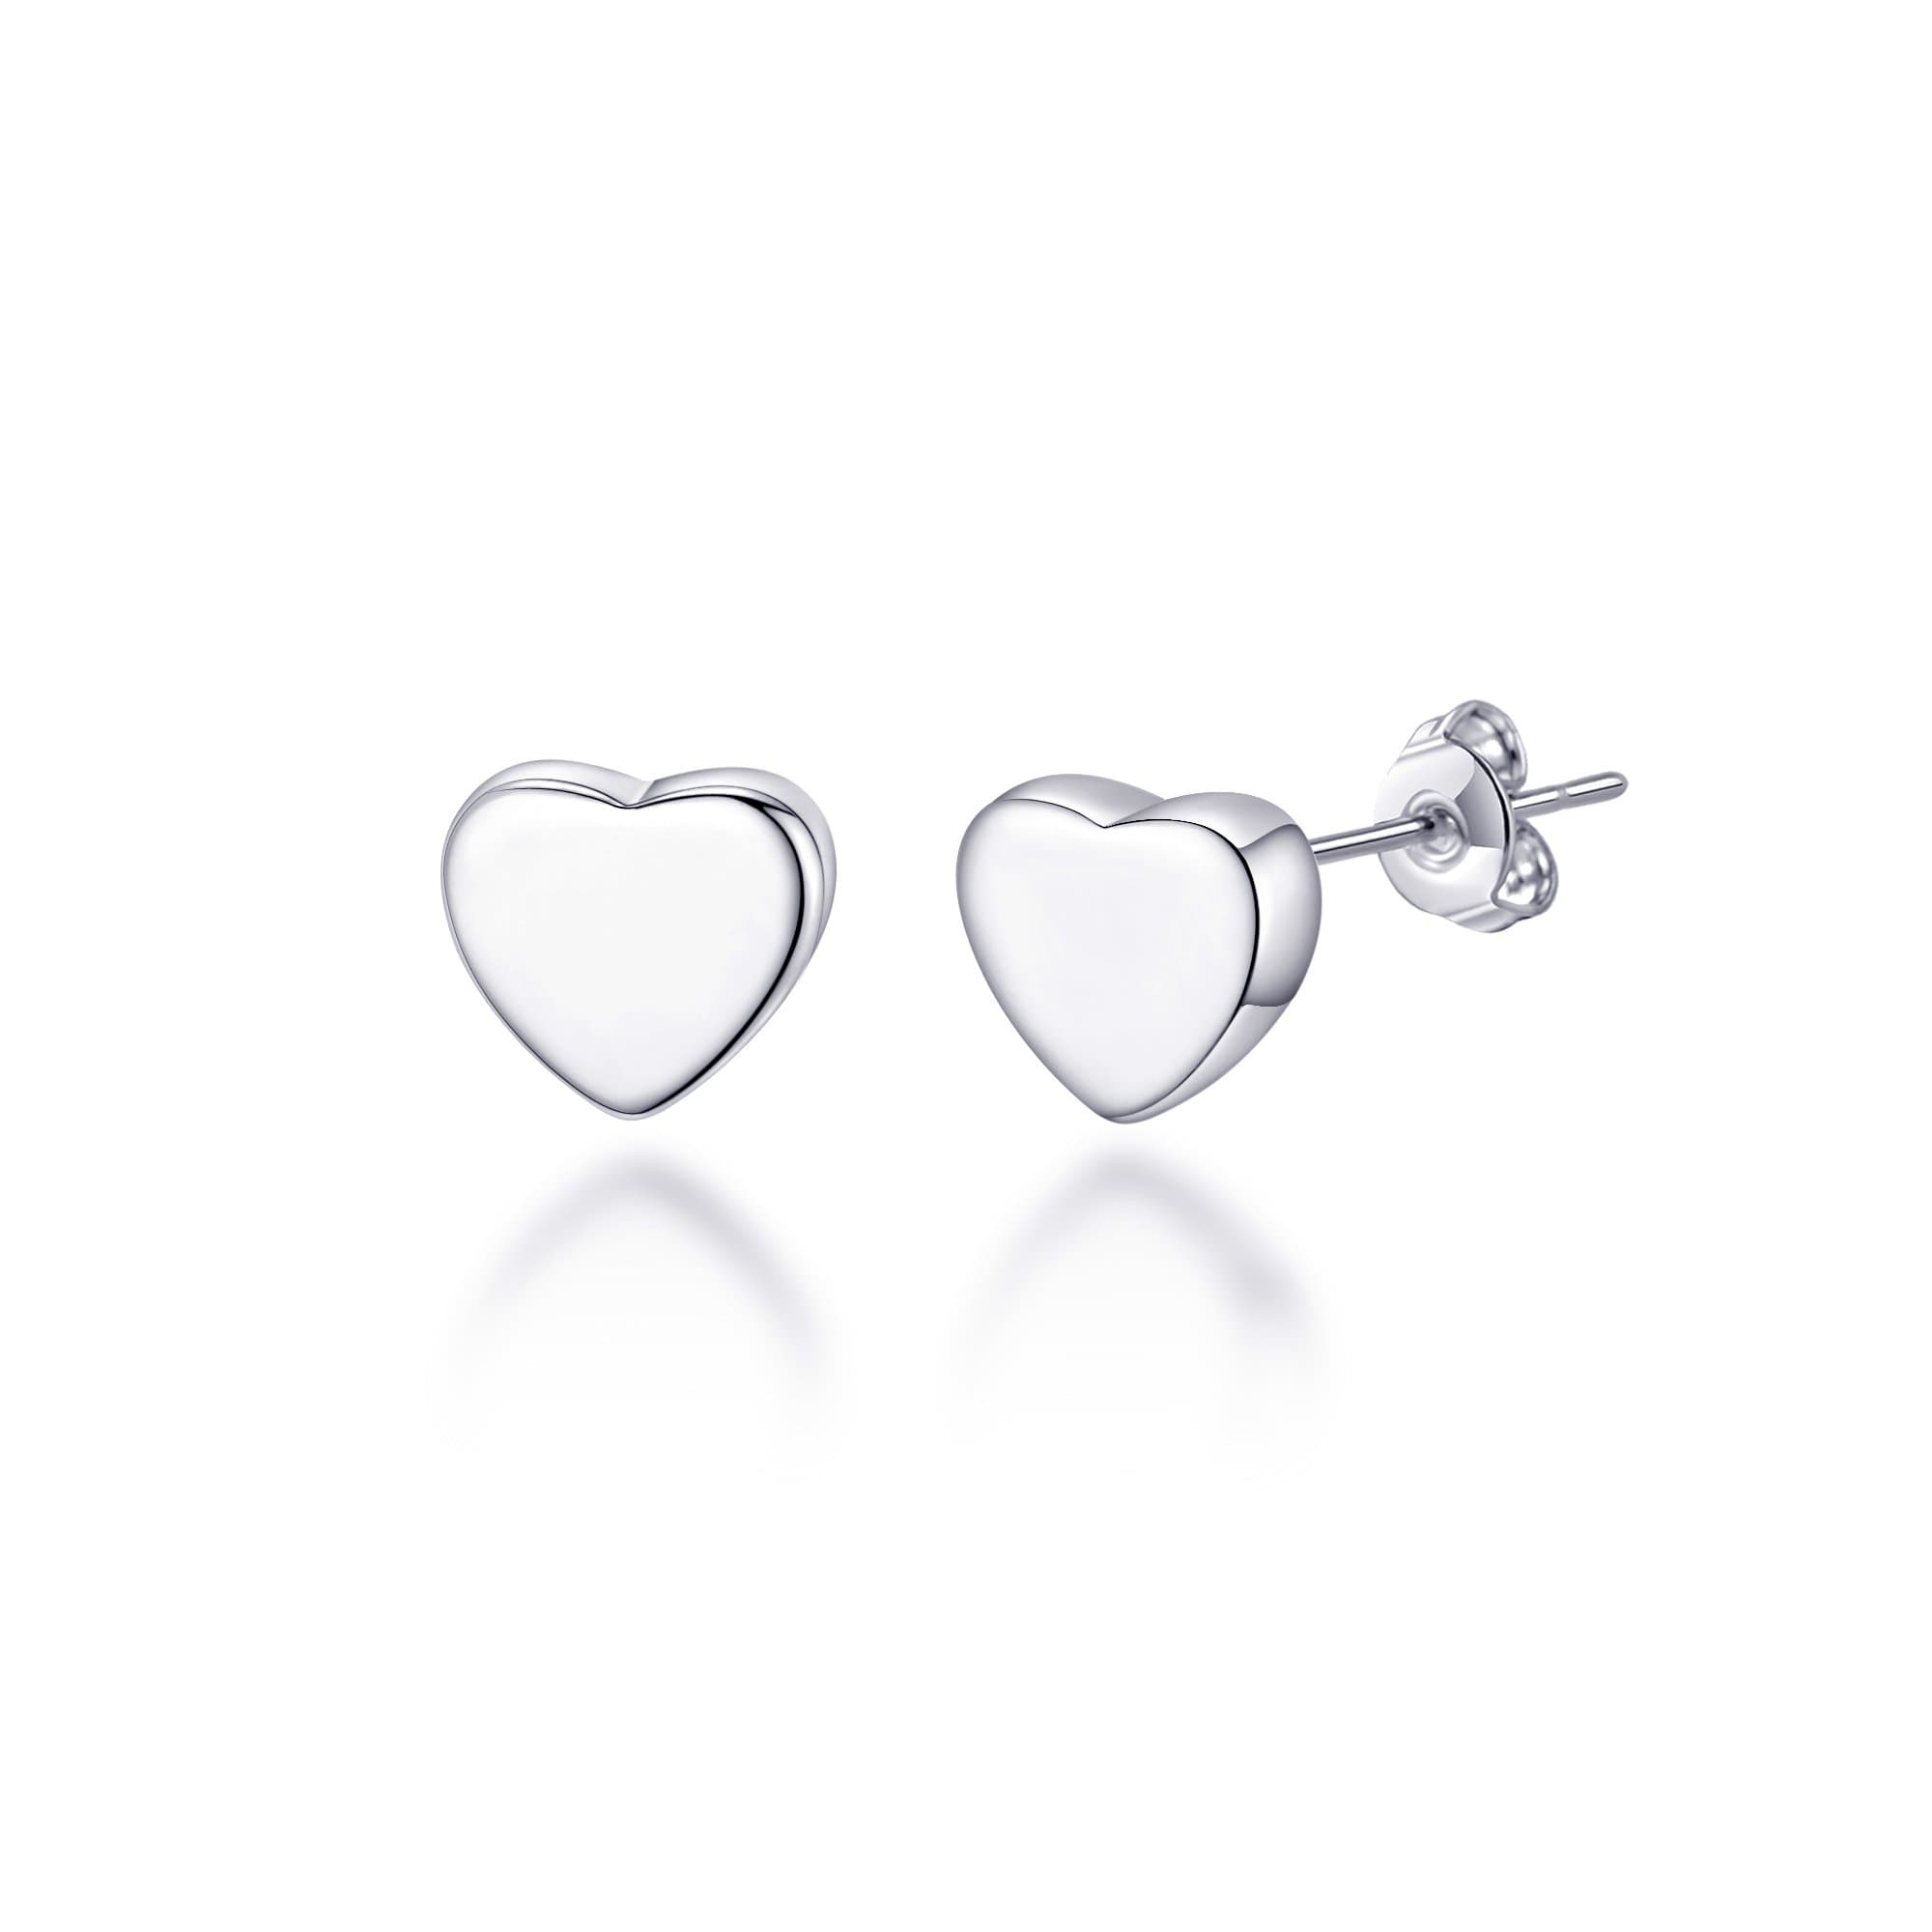 Sterling Silver Heart Earrings by Philip Jones Jewellery